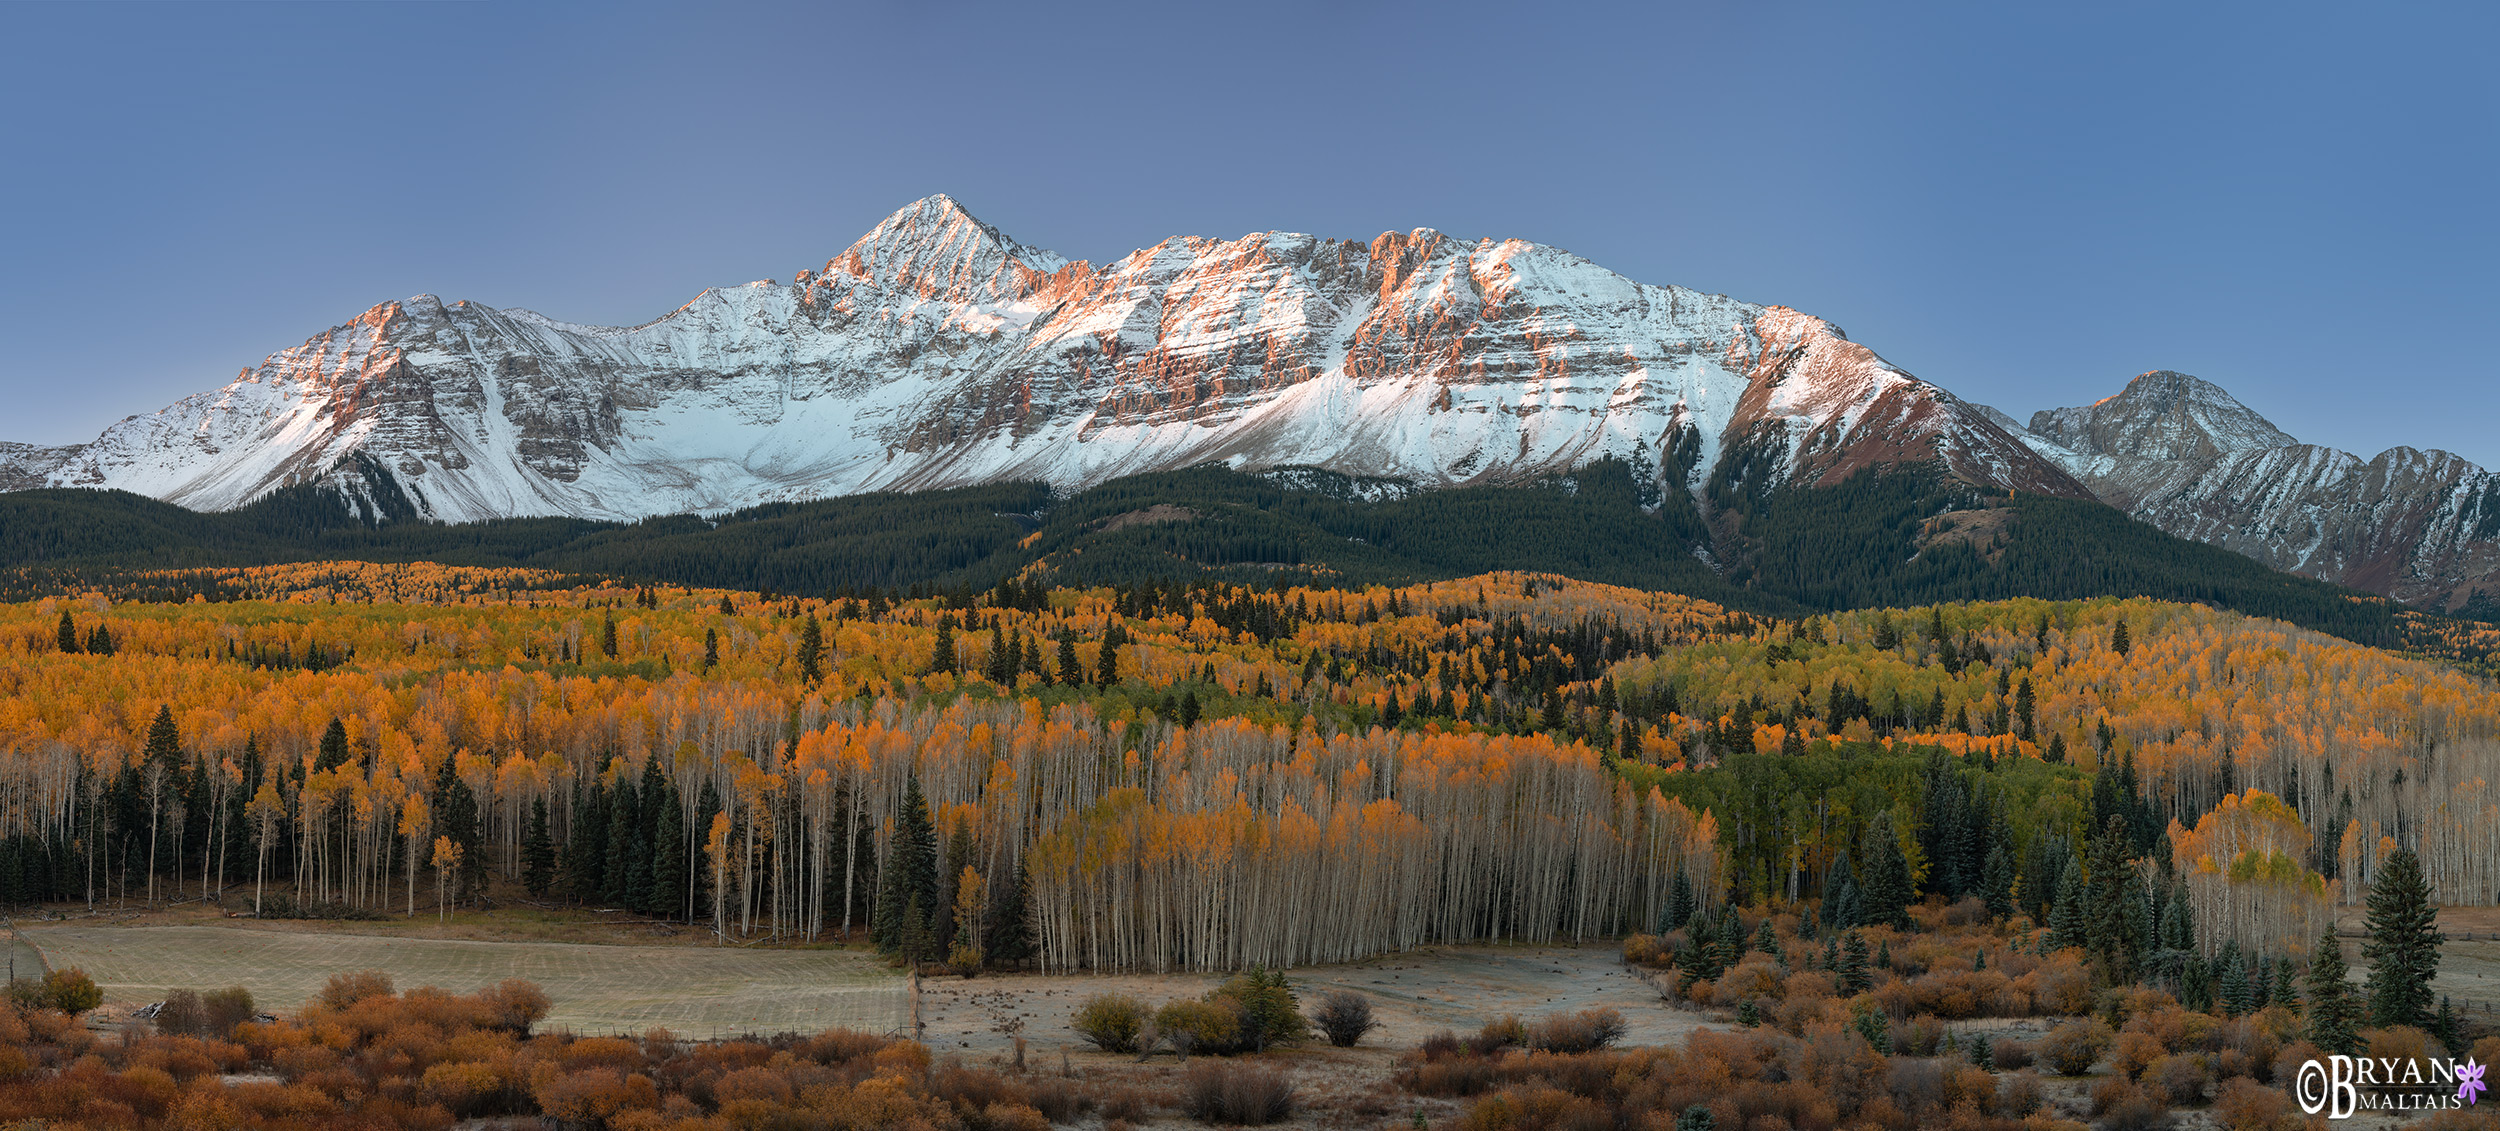 wilson peak fall colors panoramic photo print